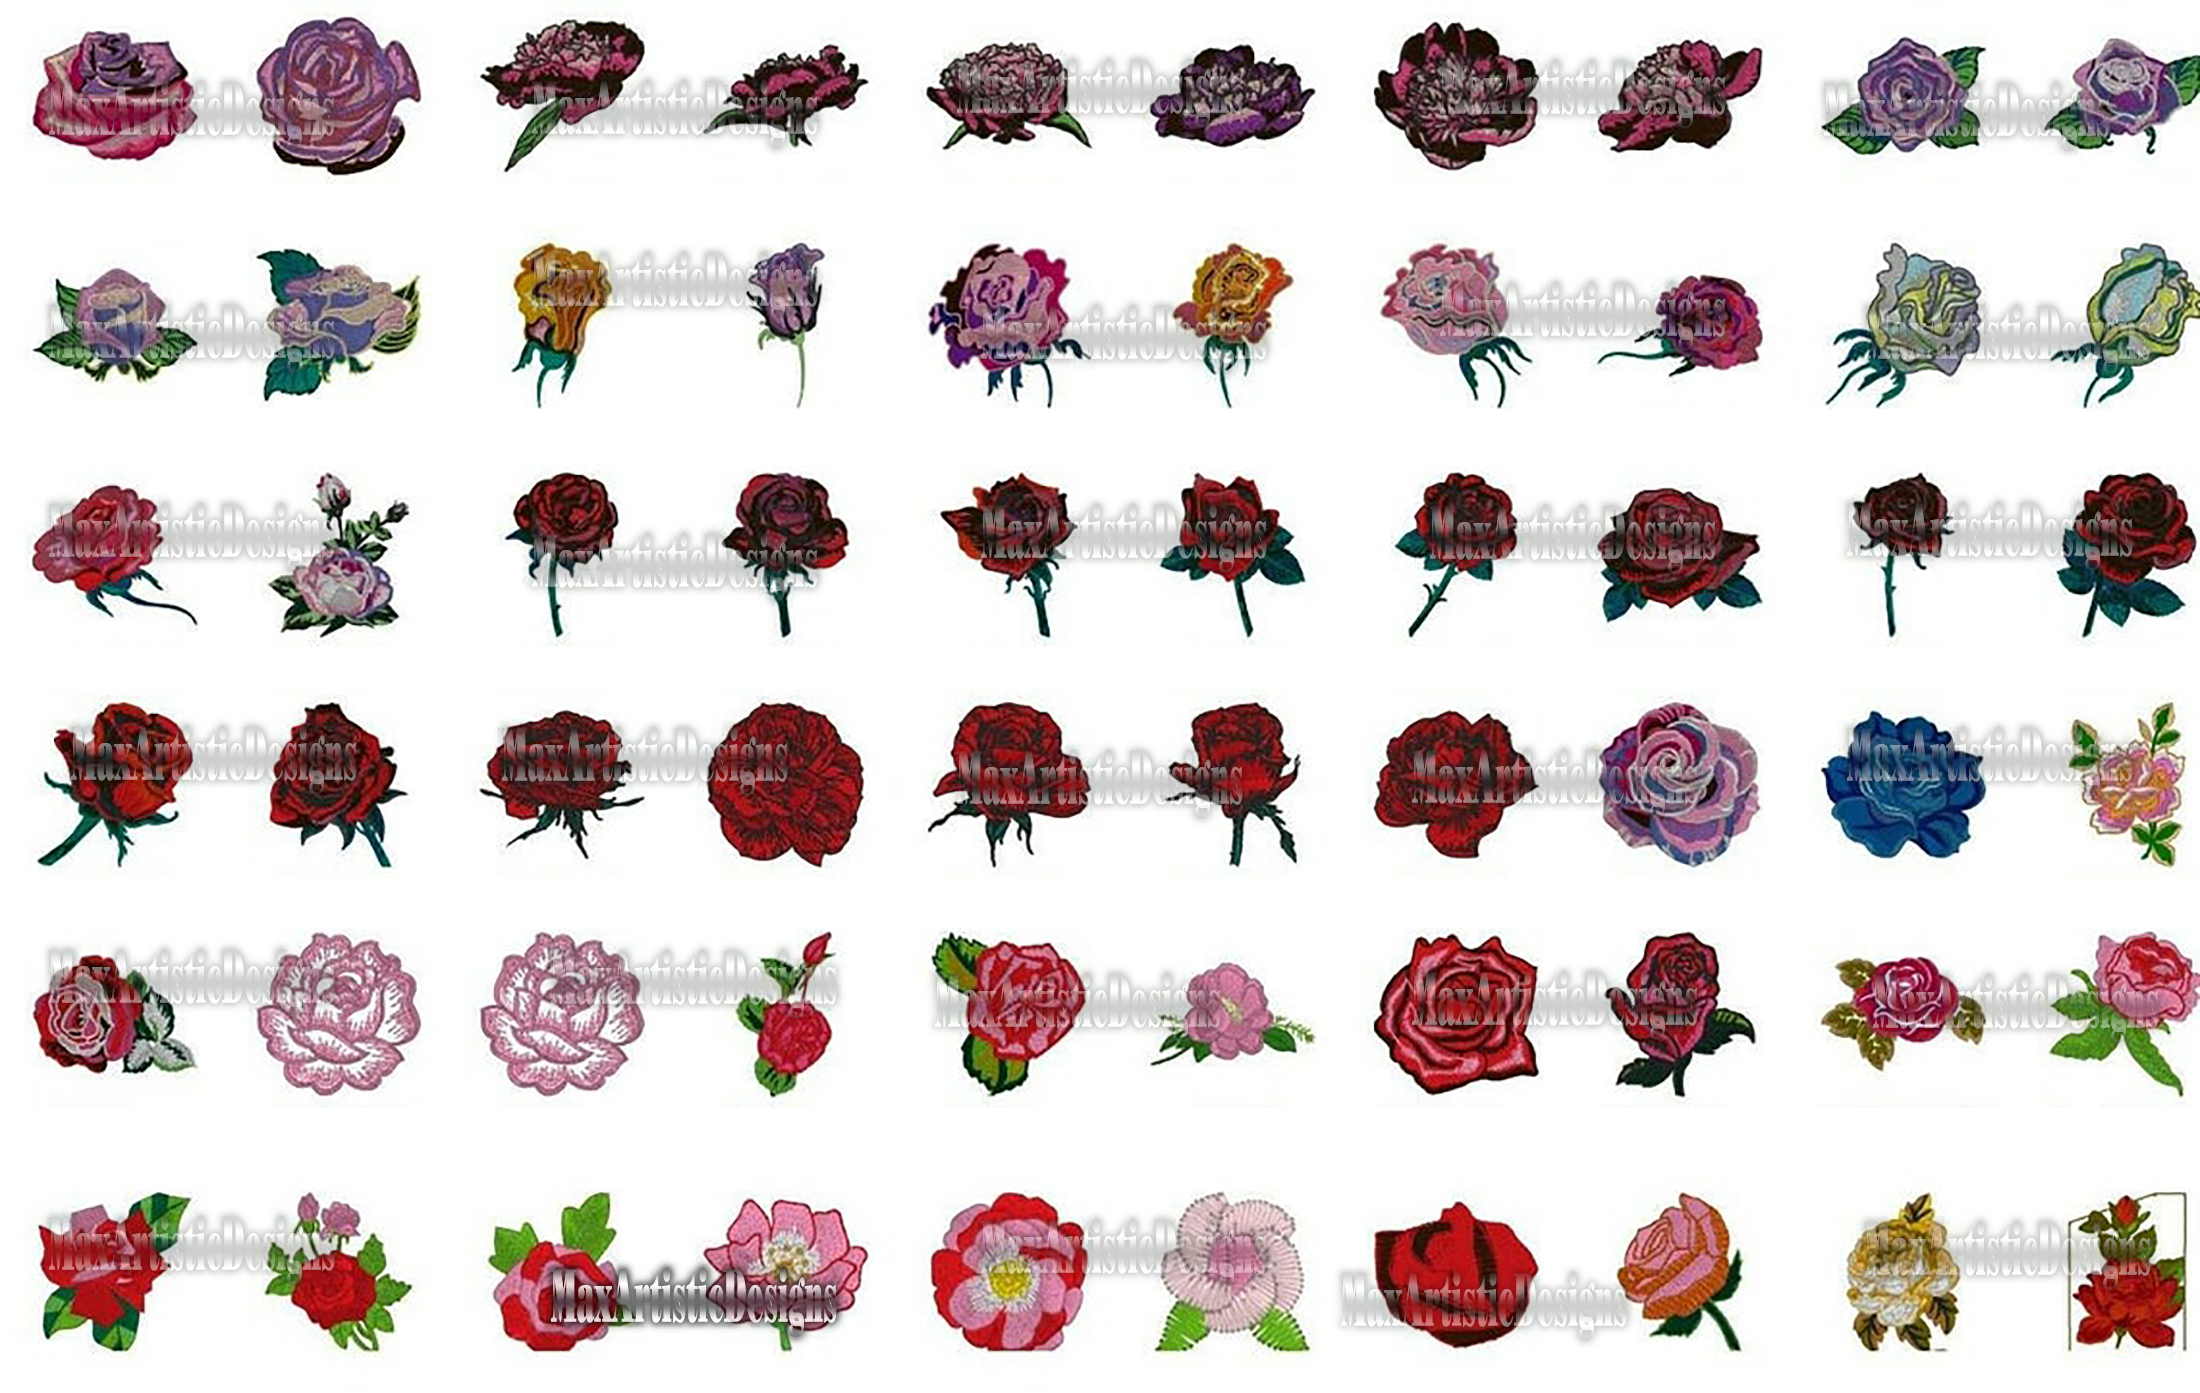 Colección de archivos de máquina de bordar de rosas 1800+ en formato pes